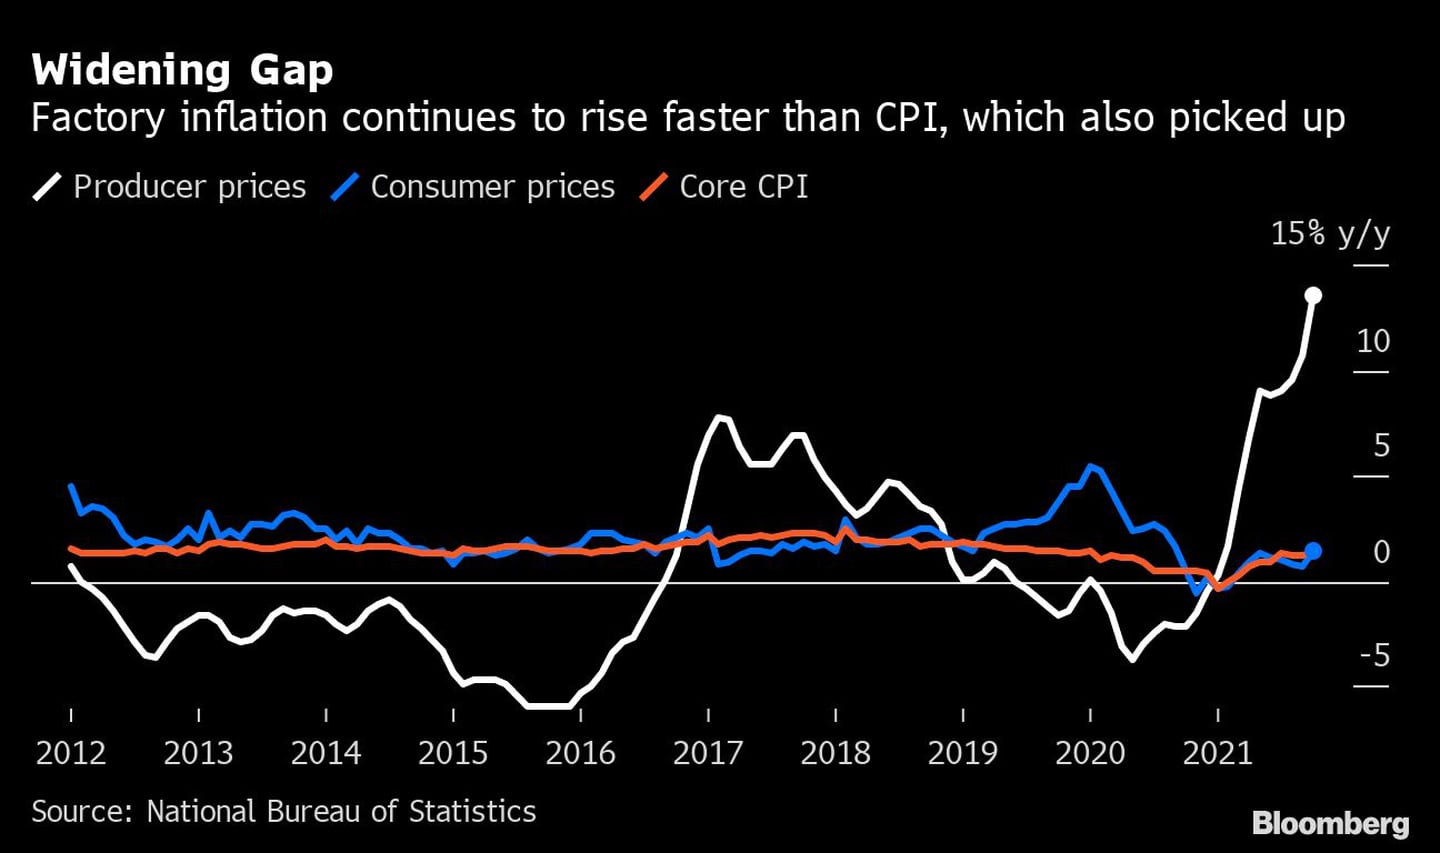 Aumento de la brecha
La inflación en las fábricas sigue subiendo más rápido que el IPC, que también repunta
Blanco: Precios de producción
Azul: precios al consumo
Rojo: IPC básicodfd